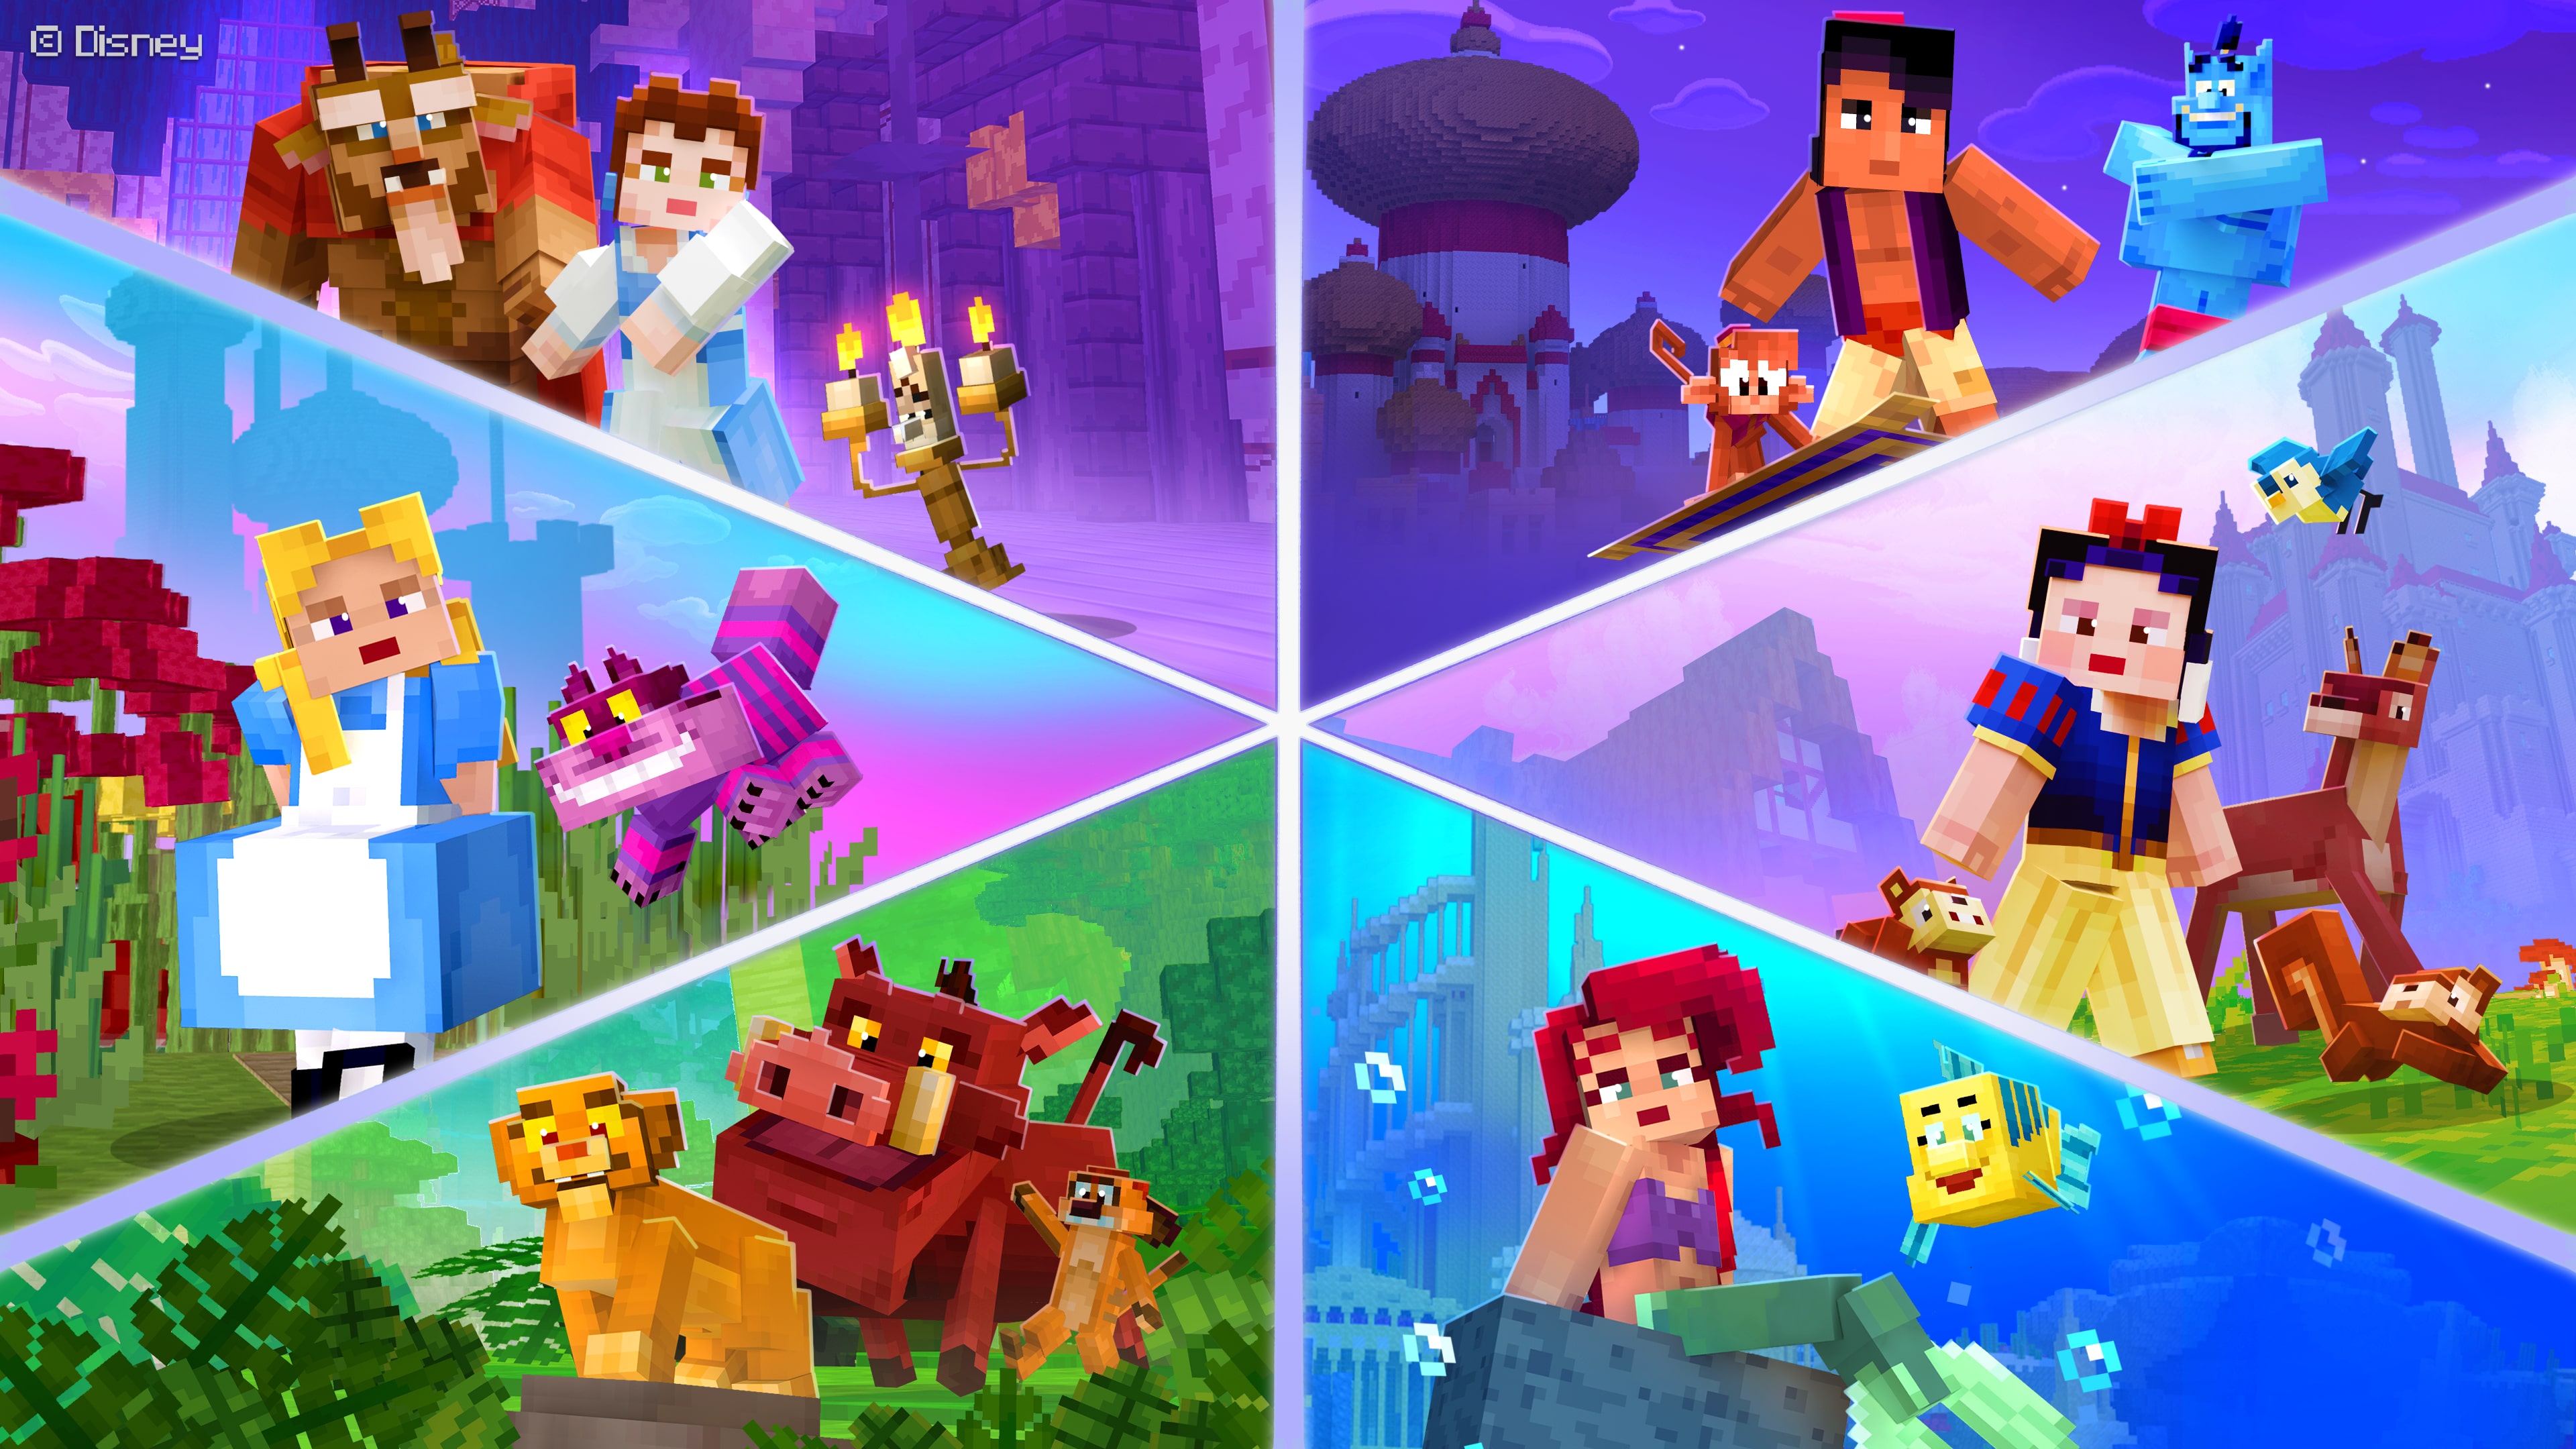 Minecraft: Disney Worlds of Adventure